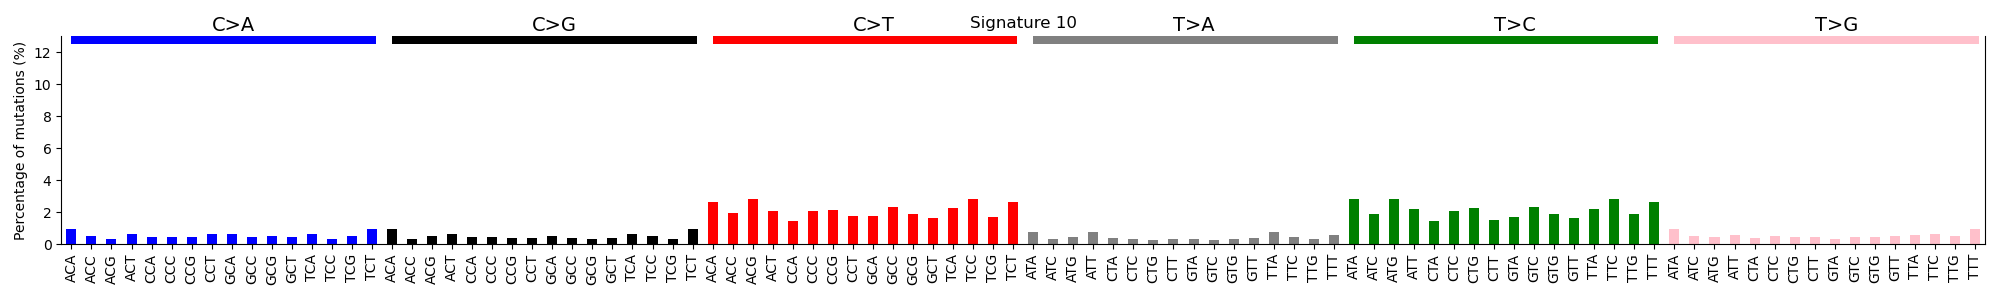 Fig14. Signature 10